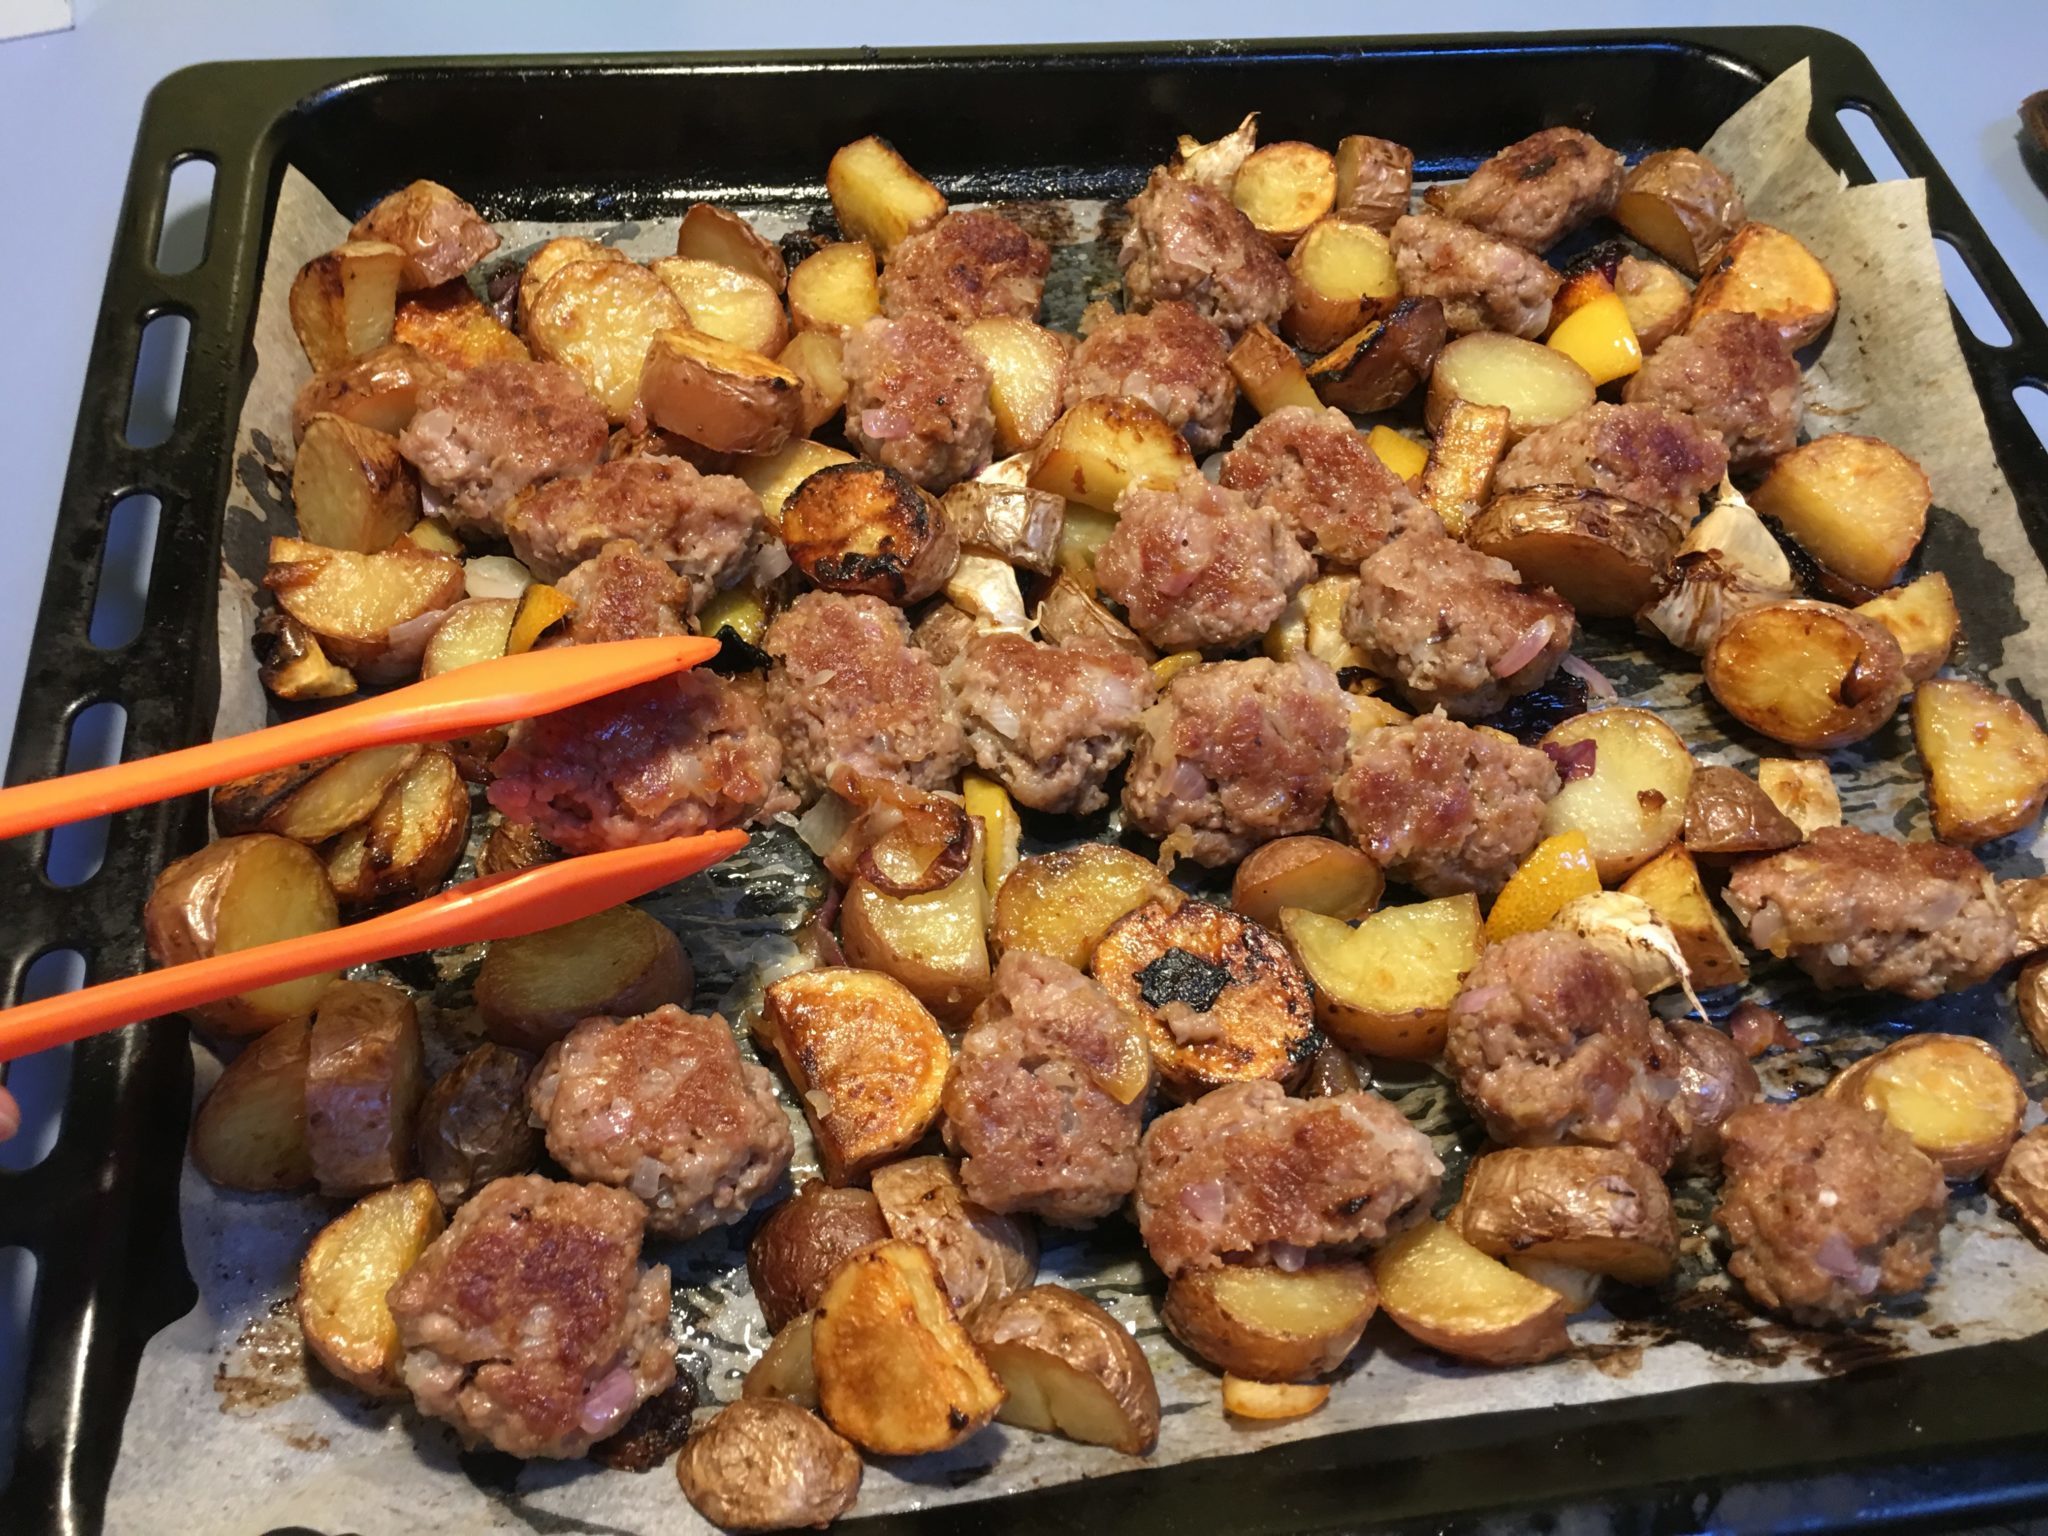 Polpette e patate al forno per principianti - polpette girate a metà cottura